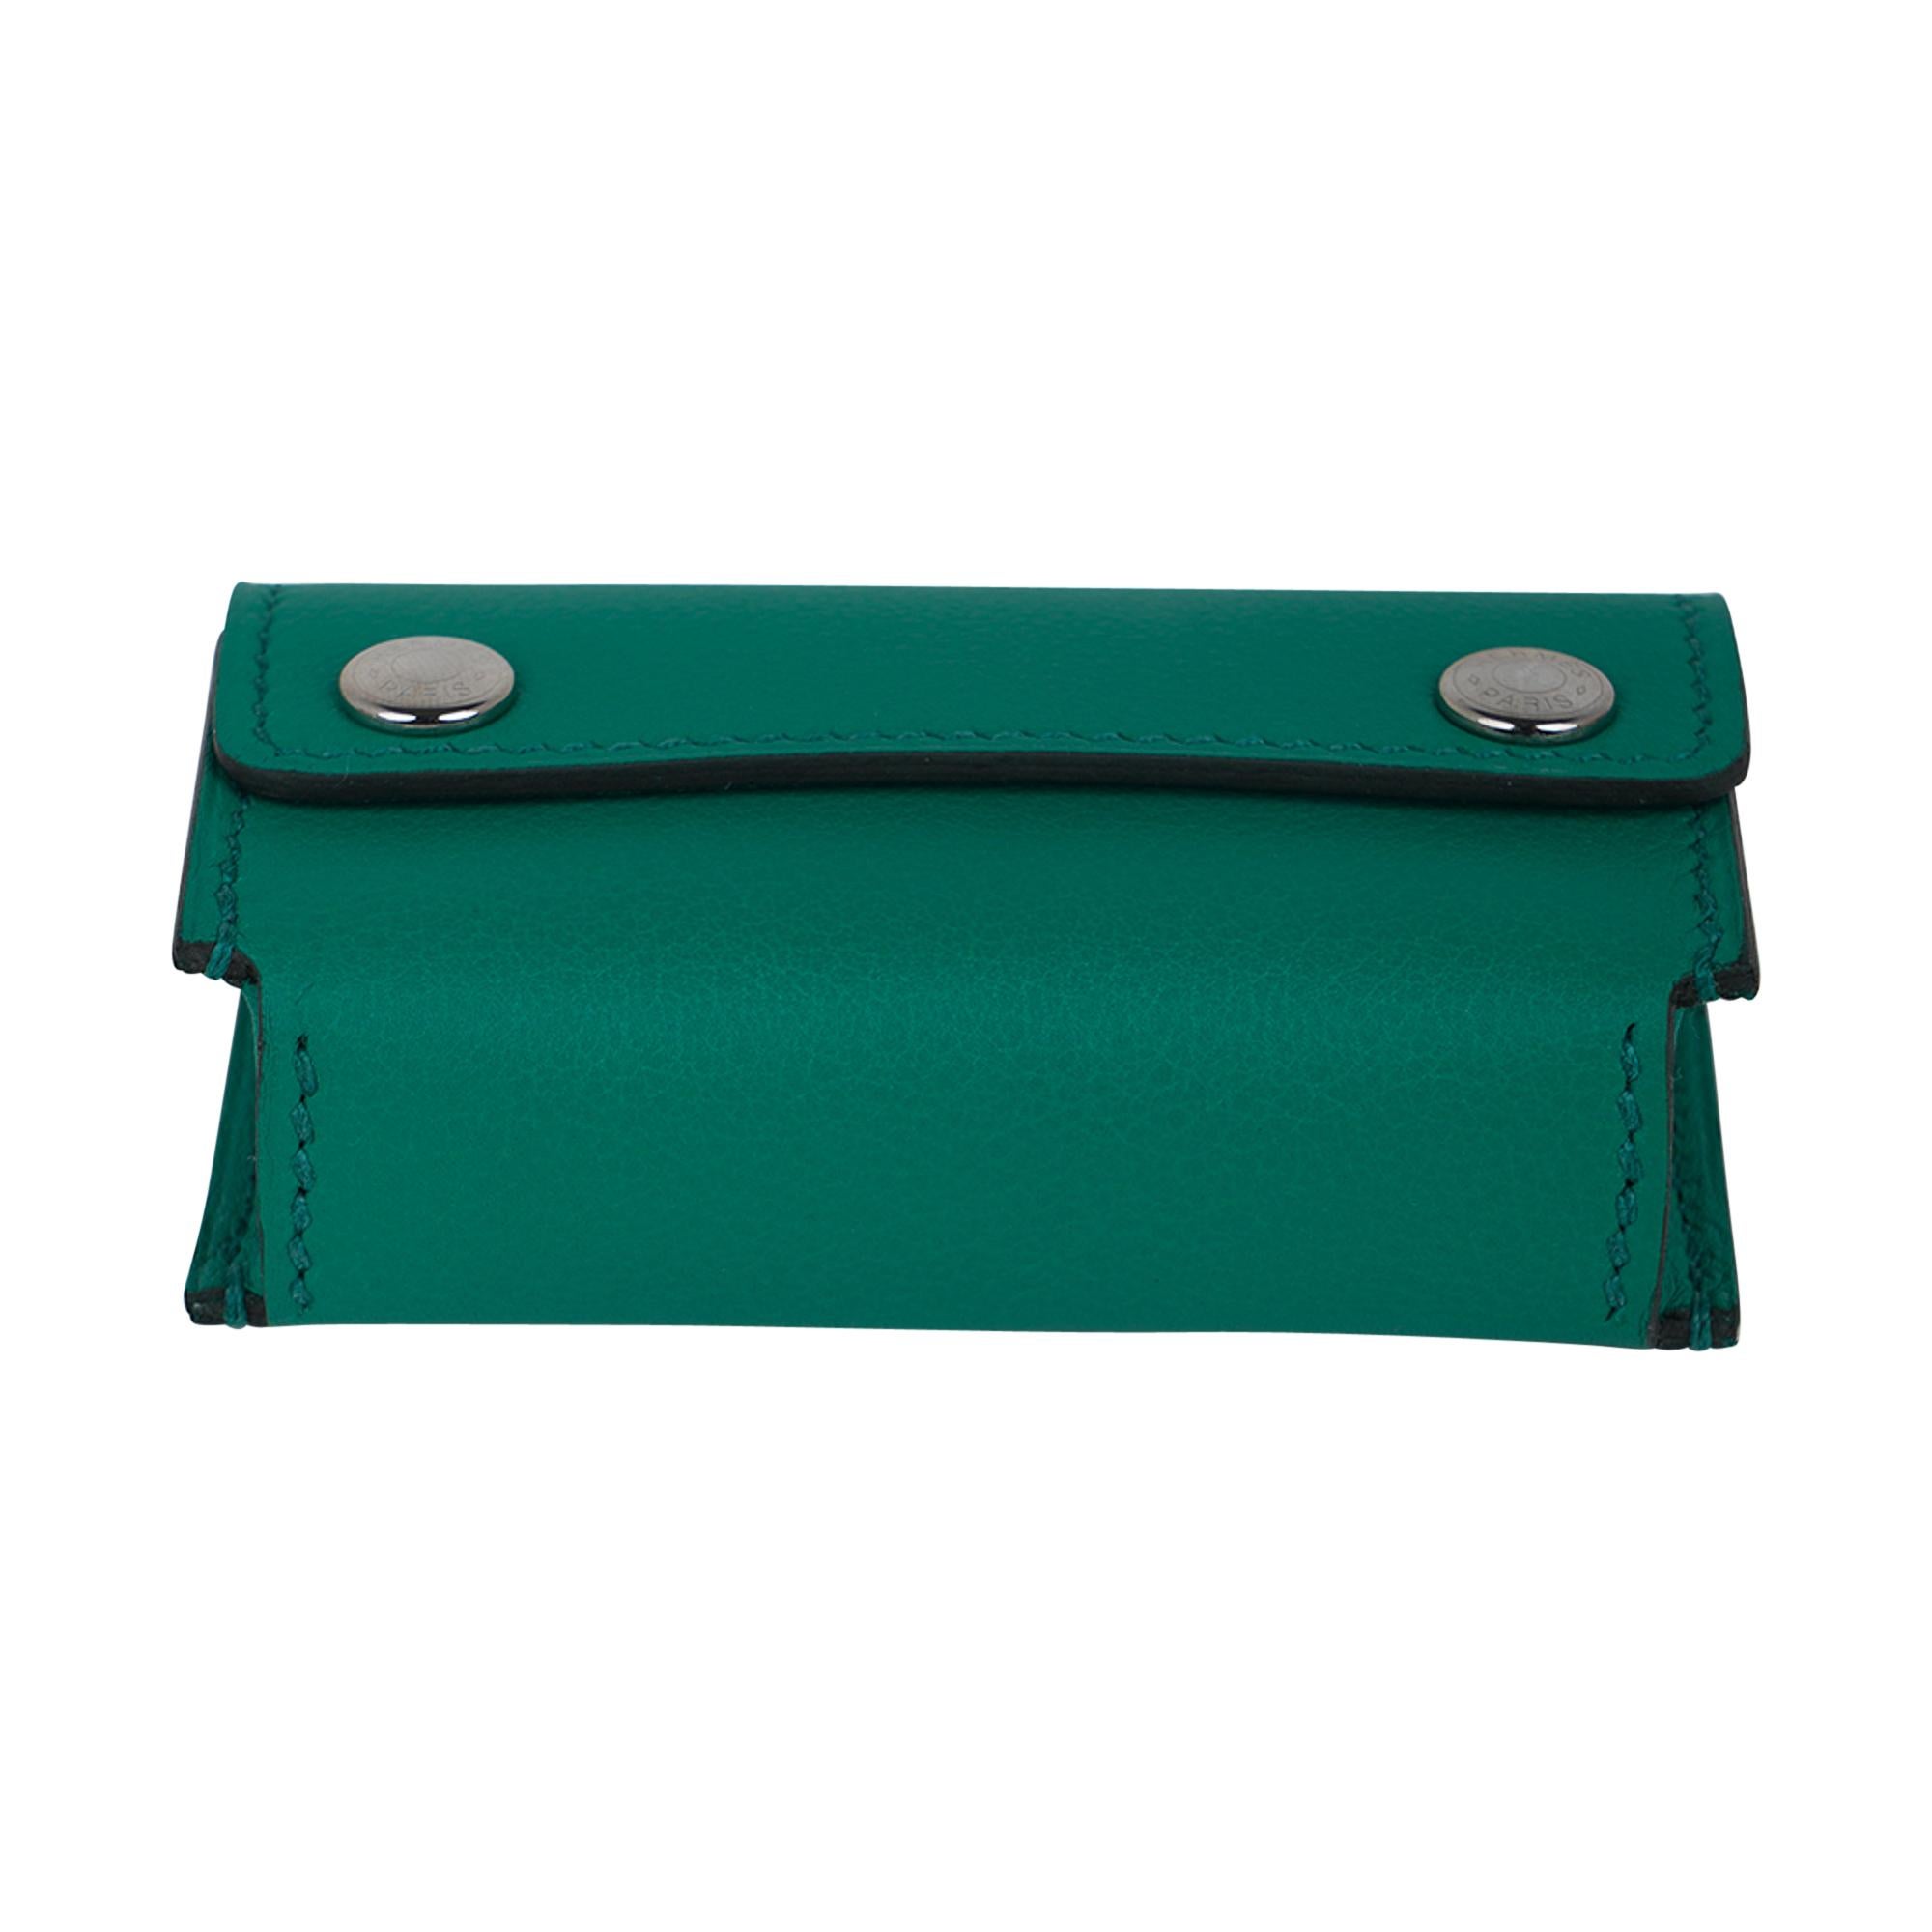 Hermes Jeu de Dominos In The Pocket Vert Verone Swift Leather New 3